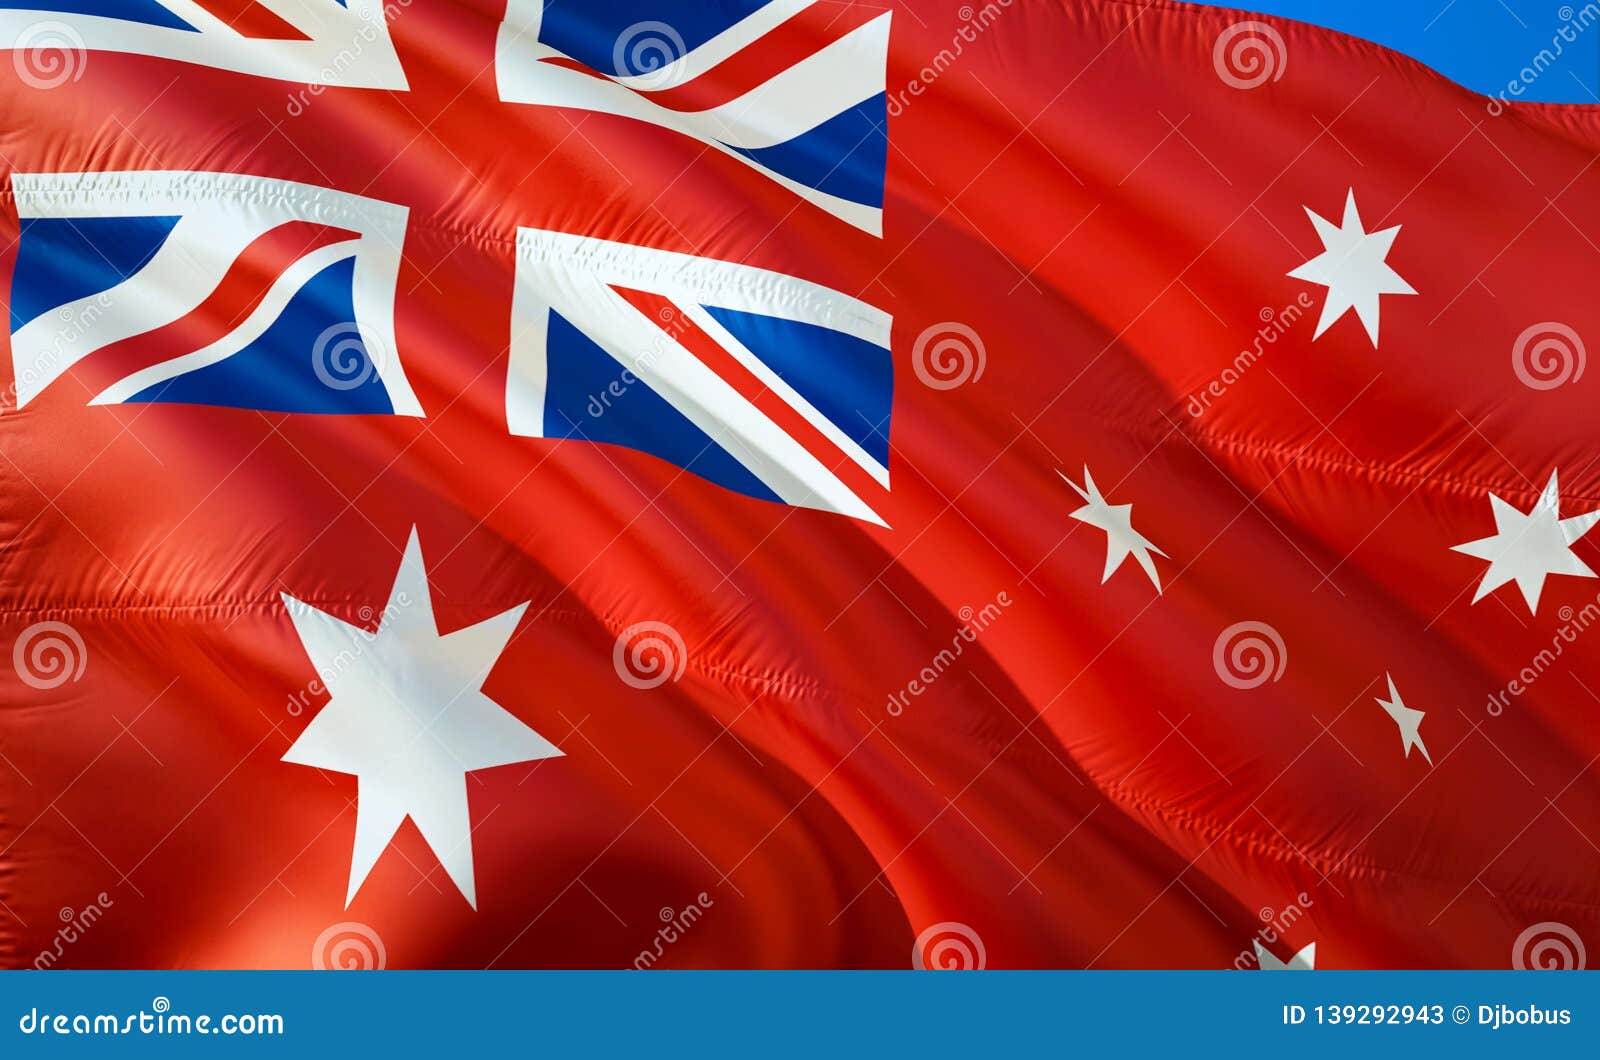 Lá cờ Red Ensign của Úc đại diện cho sự thống nhất, quyết tâm và sự kiên trì. Nếu bạn muốn khám phá lịch sử và ý nghĩa của lá cờ này, hãy xem hình ảnh để biết cách nó đã trở thành biểu tượng của Úc ngày nay.